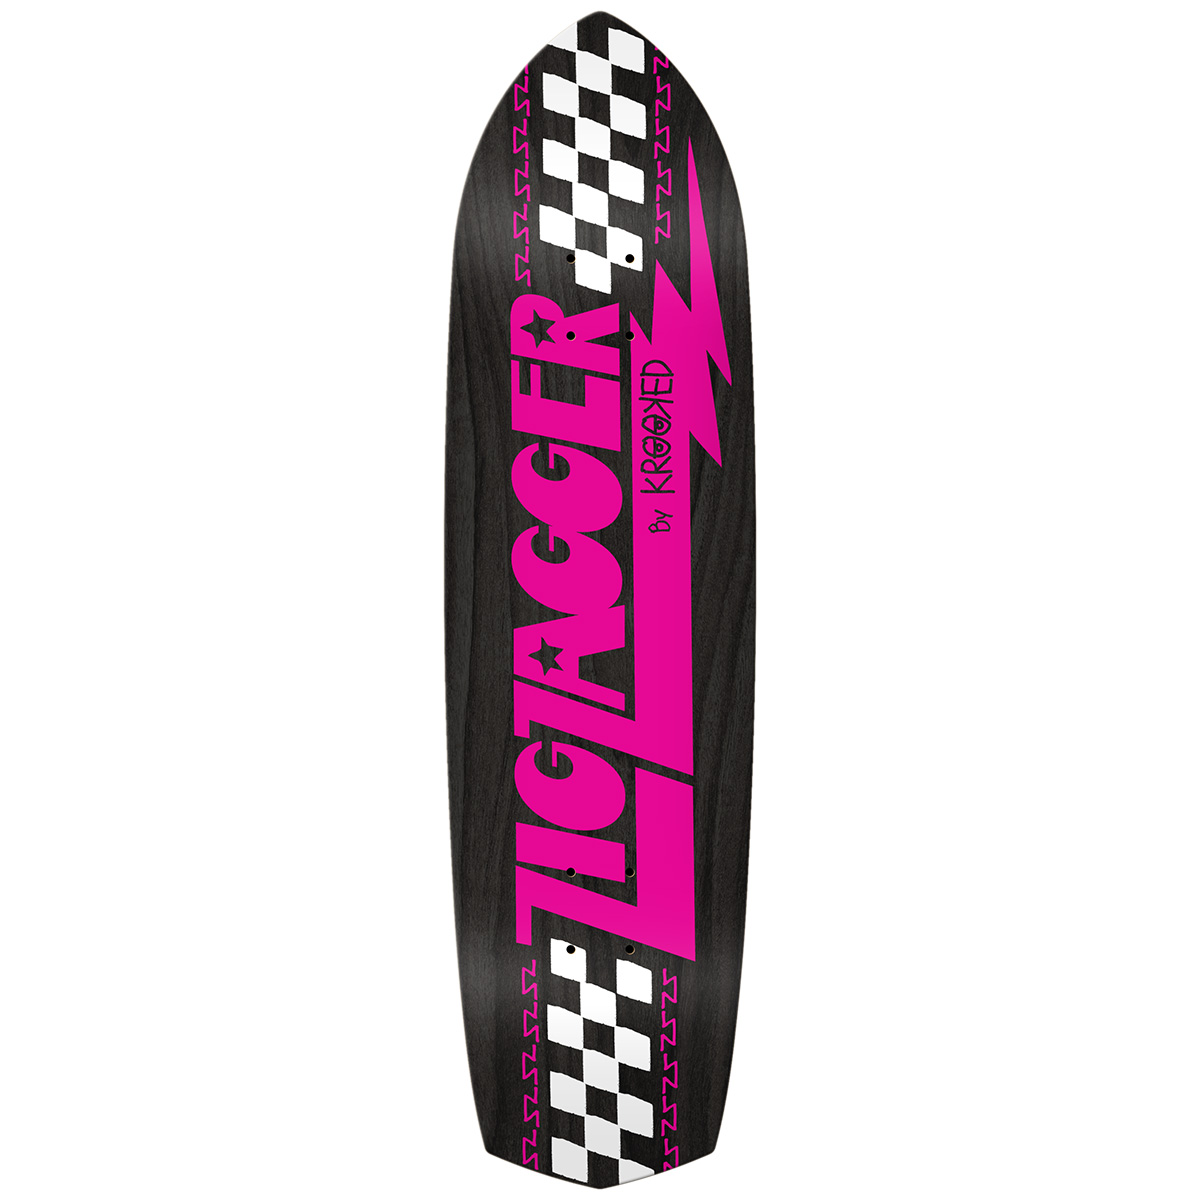 Krooked Zip Zagger OG Graphic Recolor Skateboard Deck Black Pink 8.62